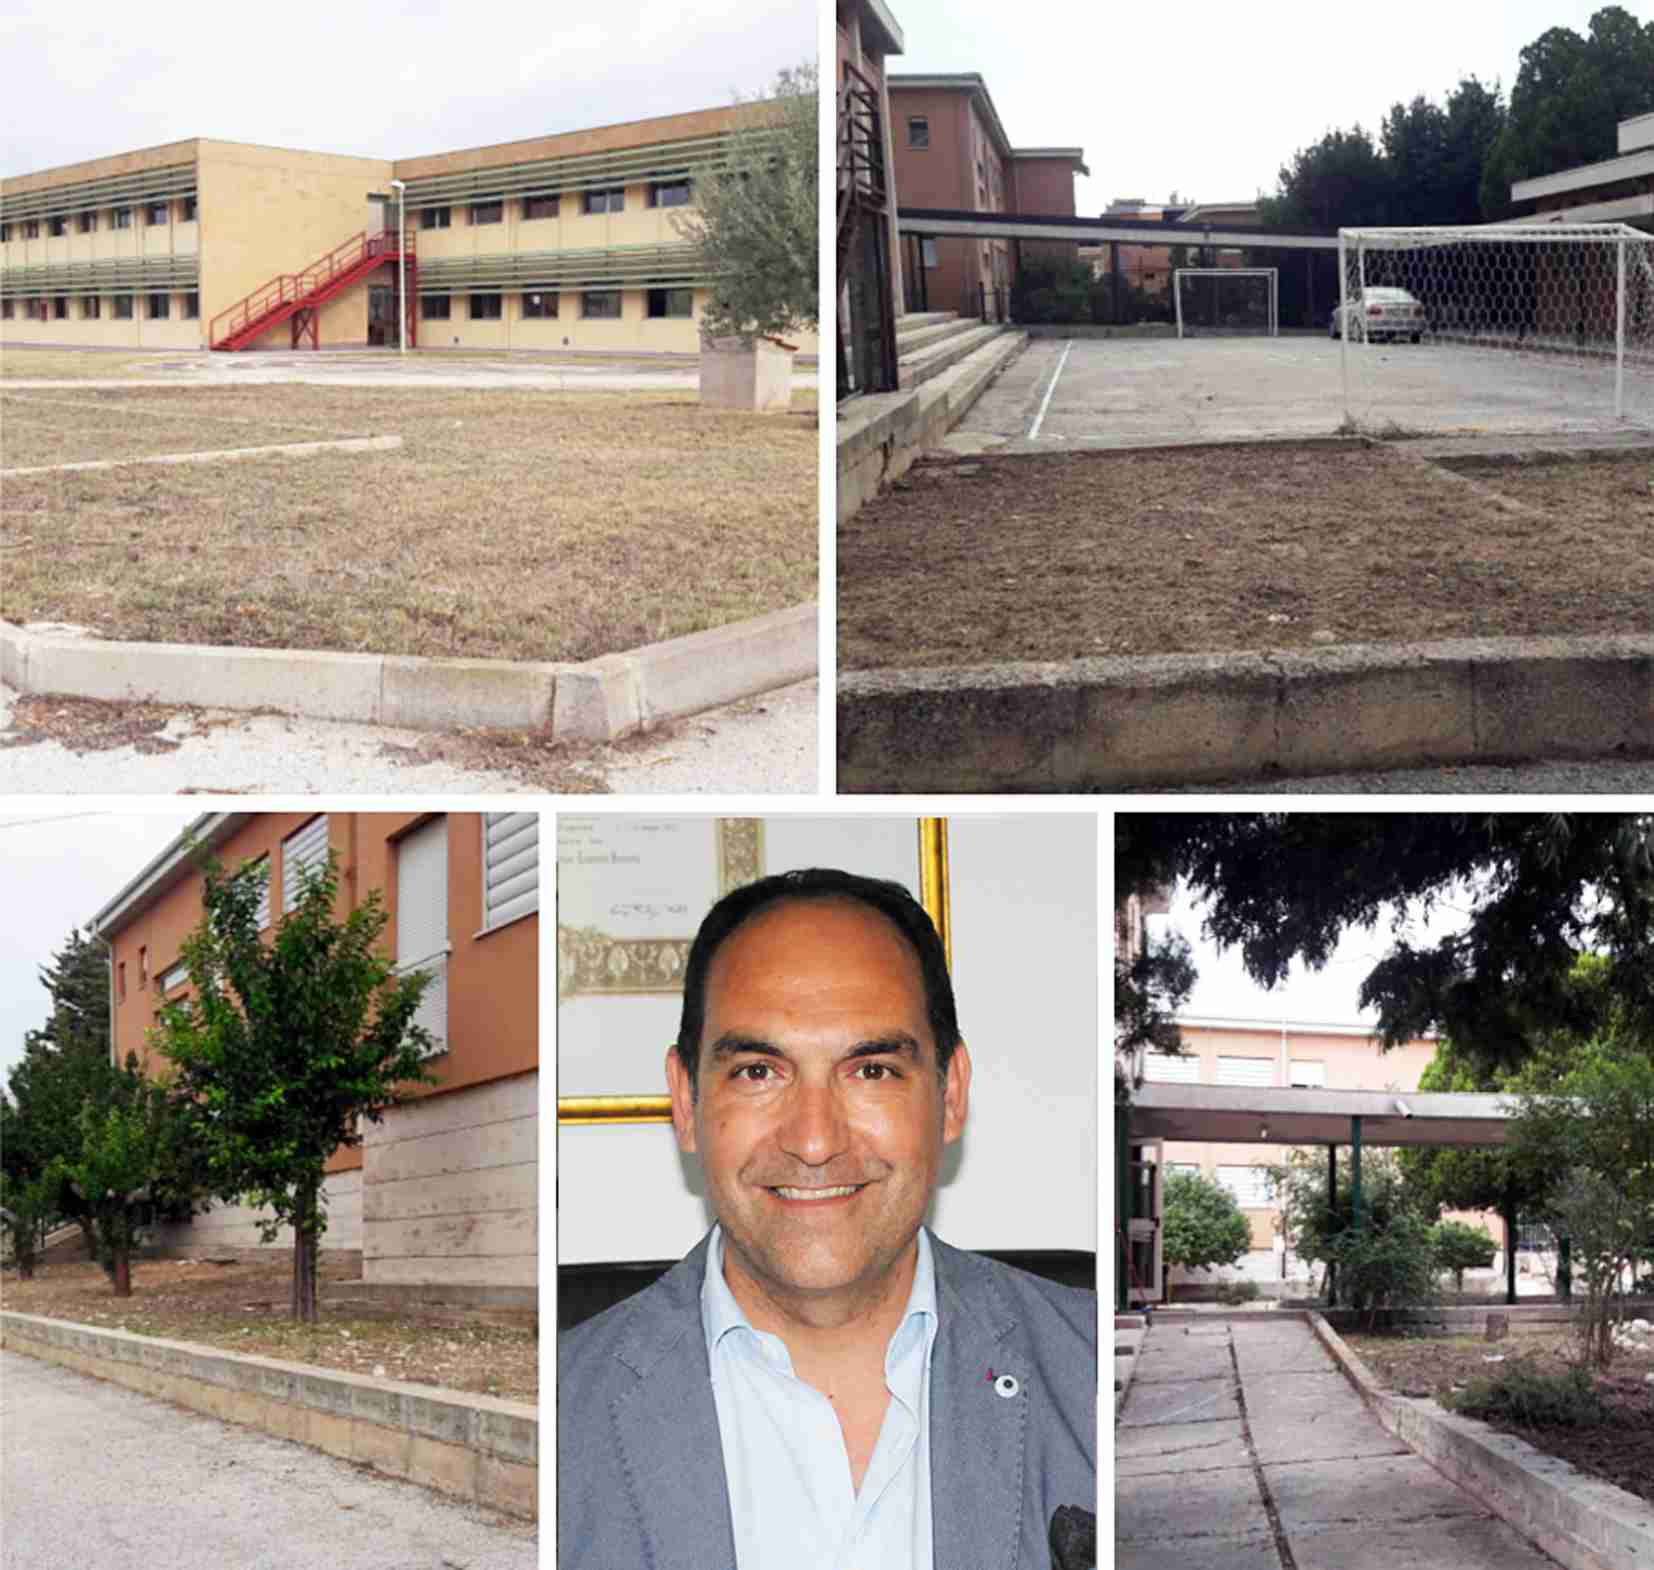 Pulizia degli spazi esterni delle scuole, il vice sindaco Luigi Fratantonio: “Pronti per il nuovo anno scolastico”